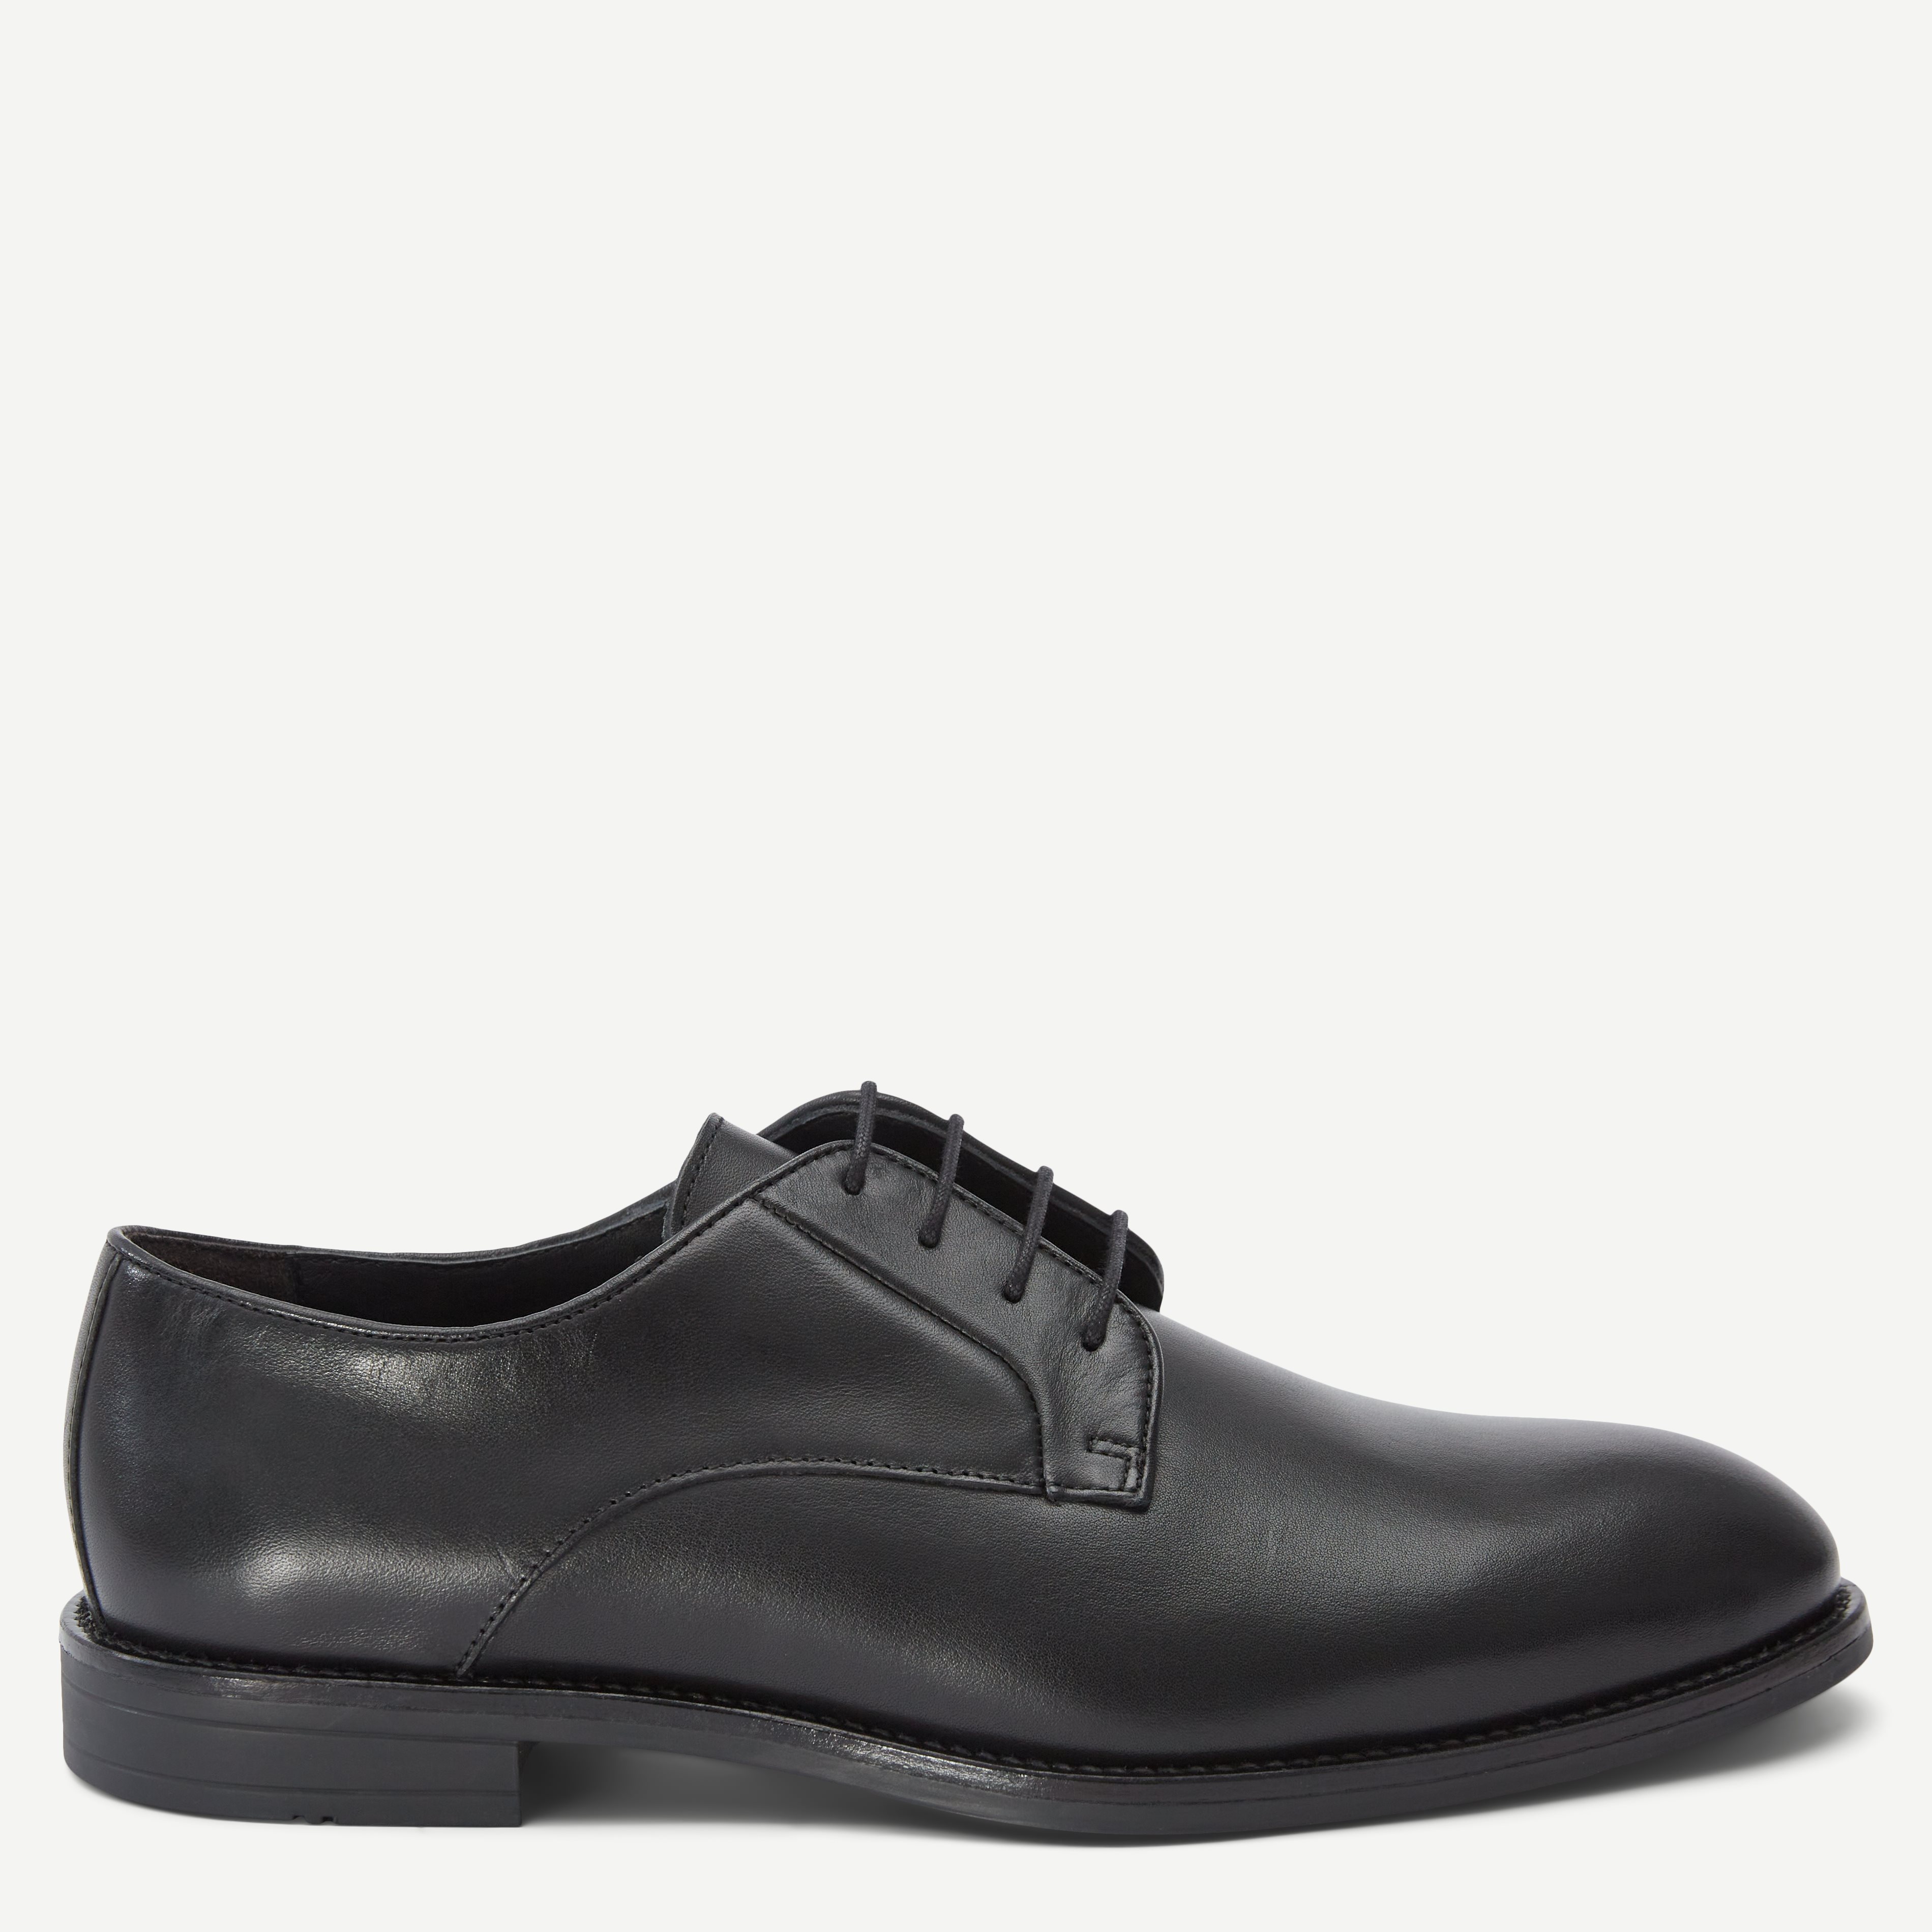 Ahler Shoes 98800 Black